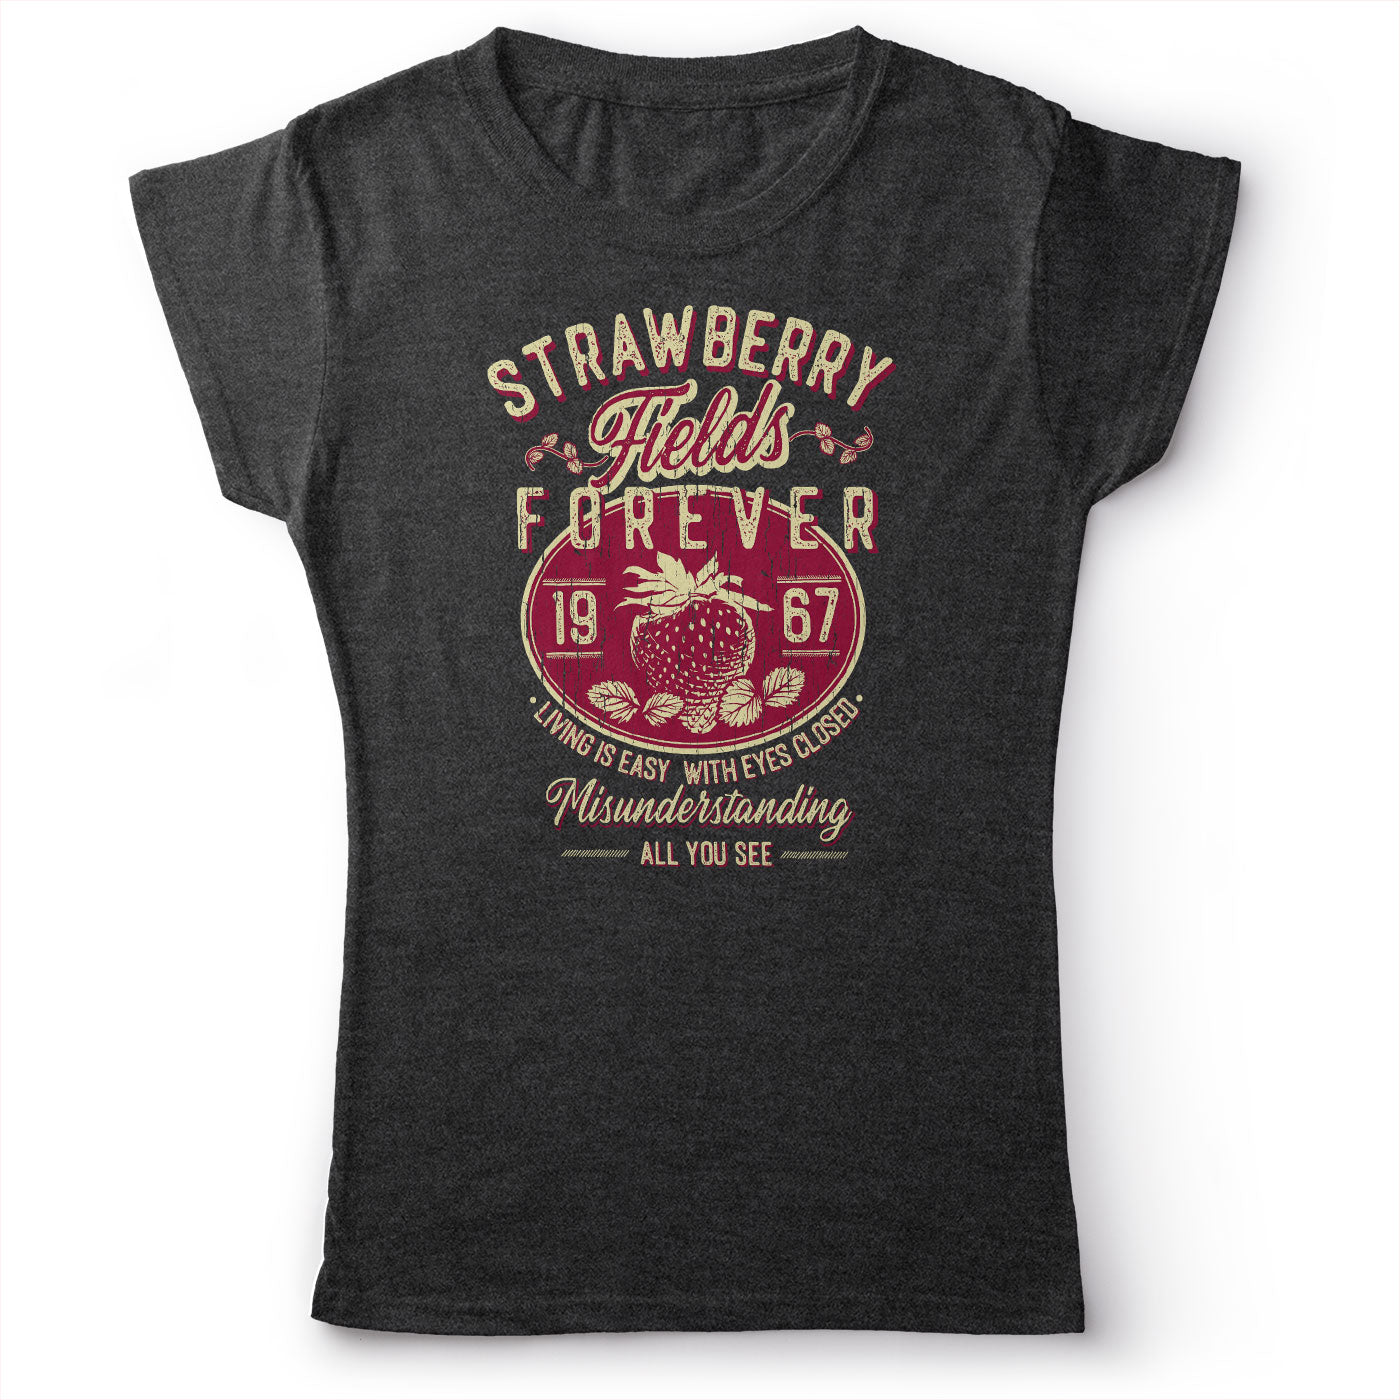 The Beatles - Strawberry Fields Forever - Women's T-Shirt Dark Gray 2